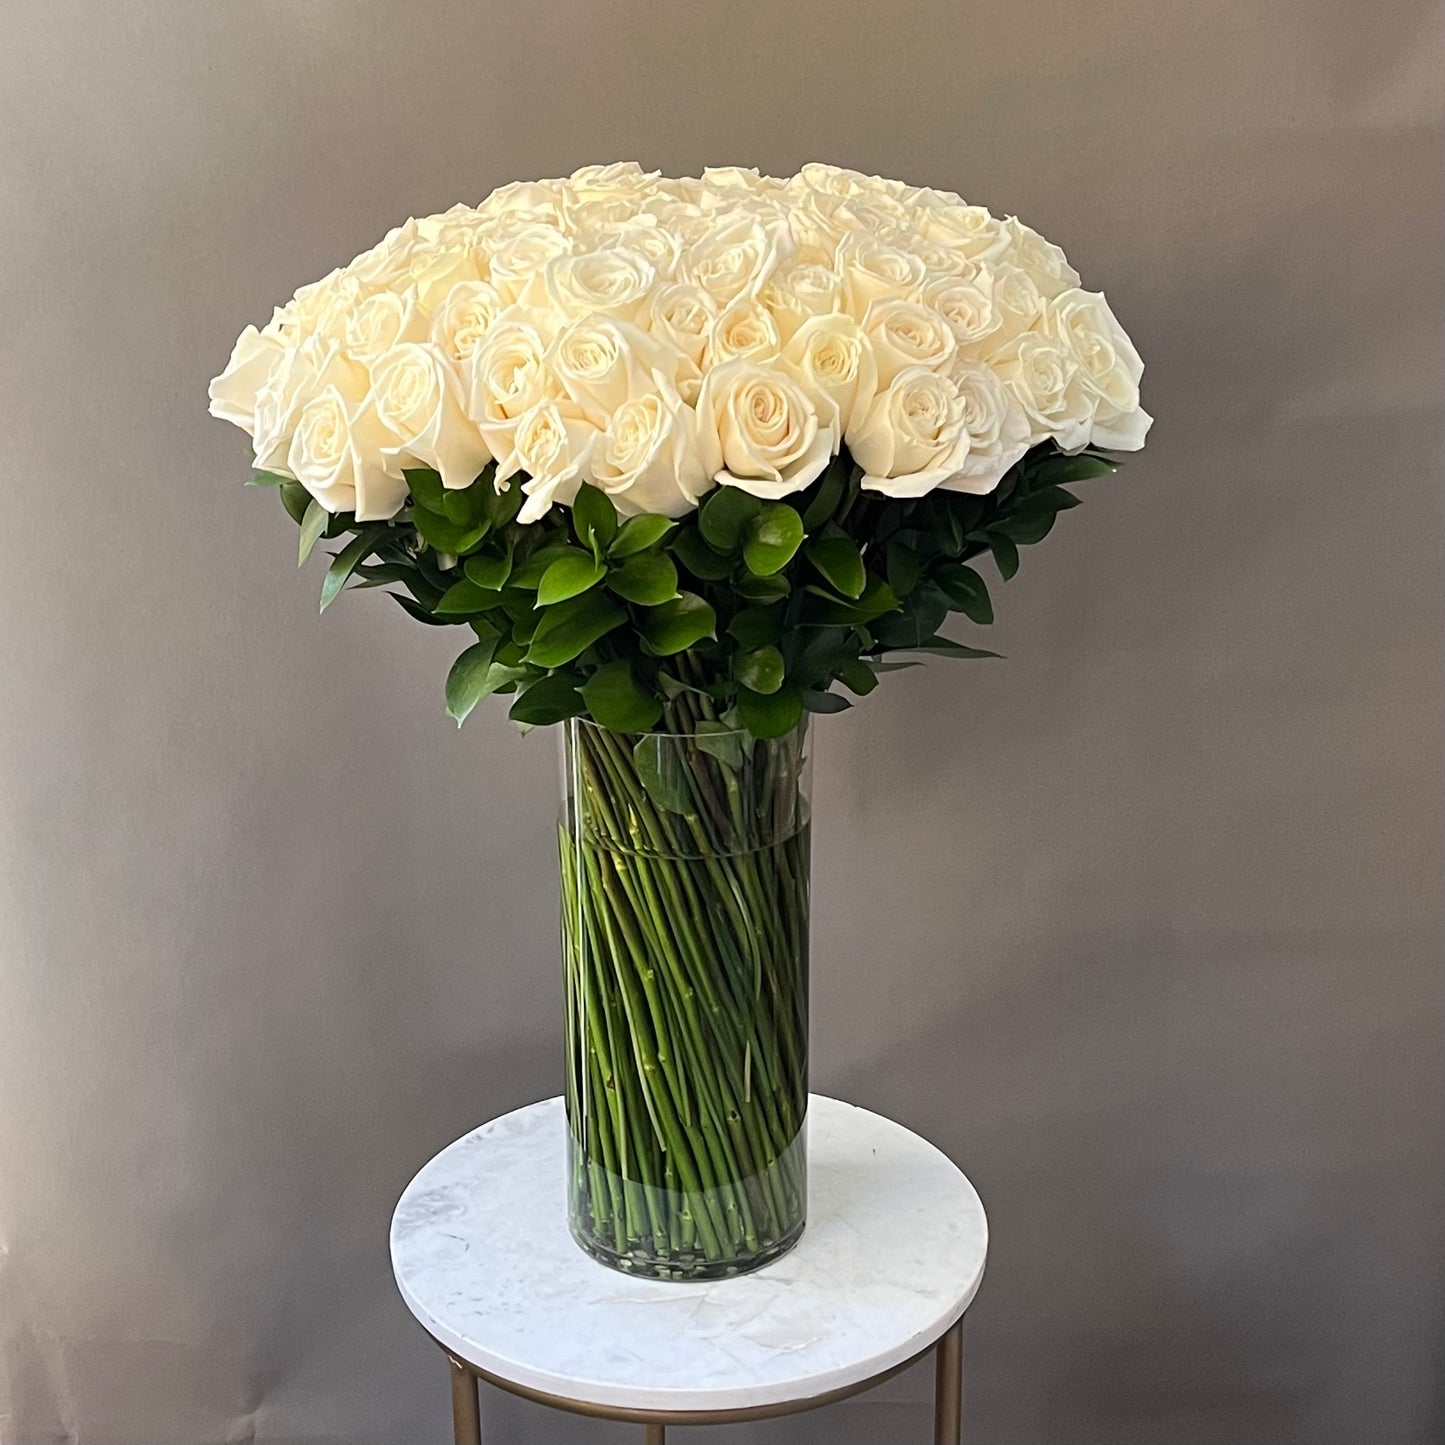 100 Premium White Roses in a Vase